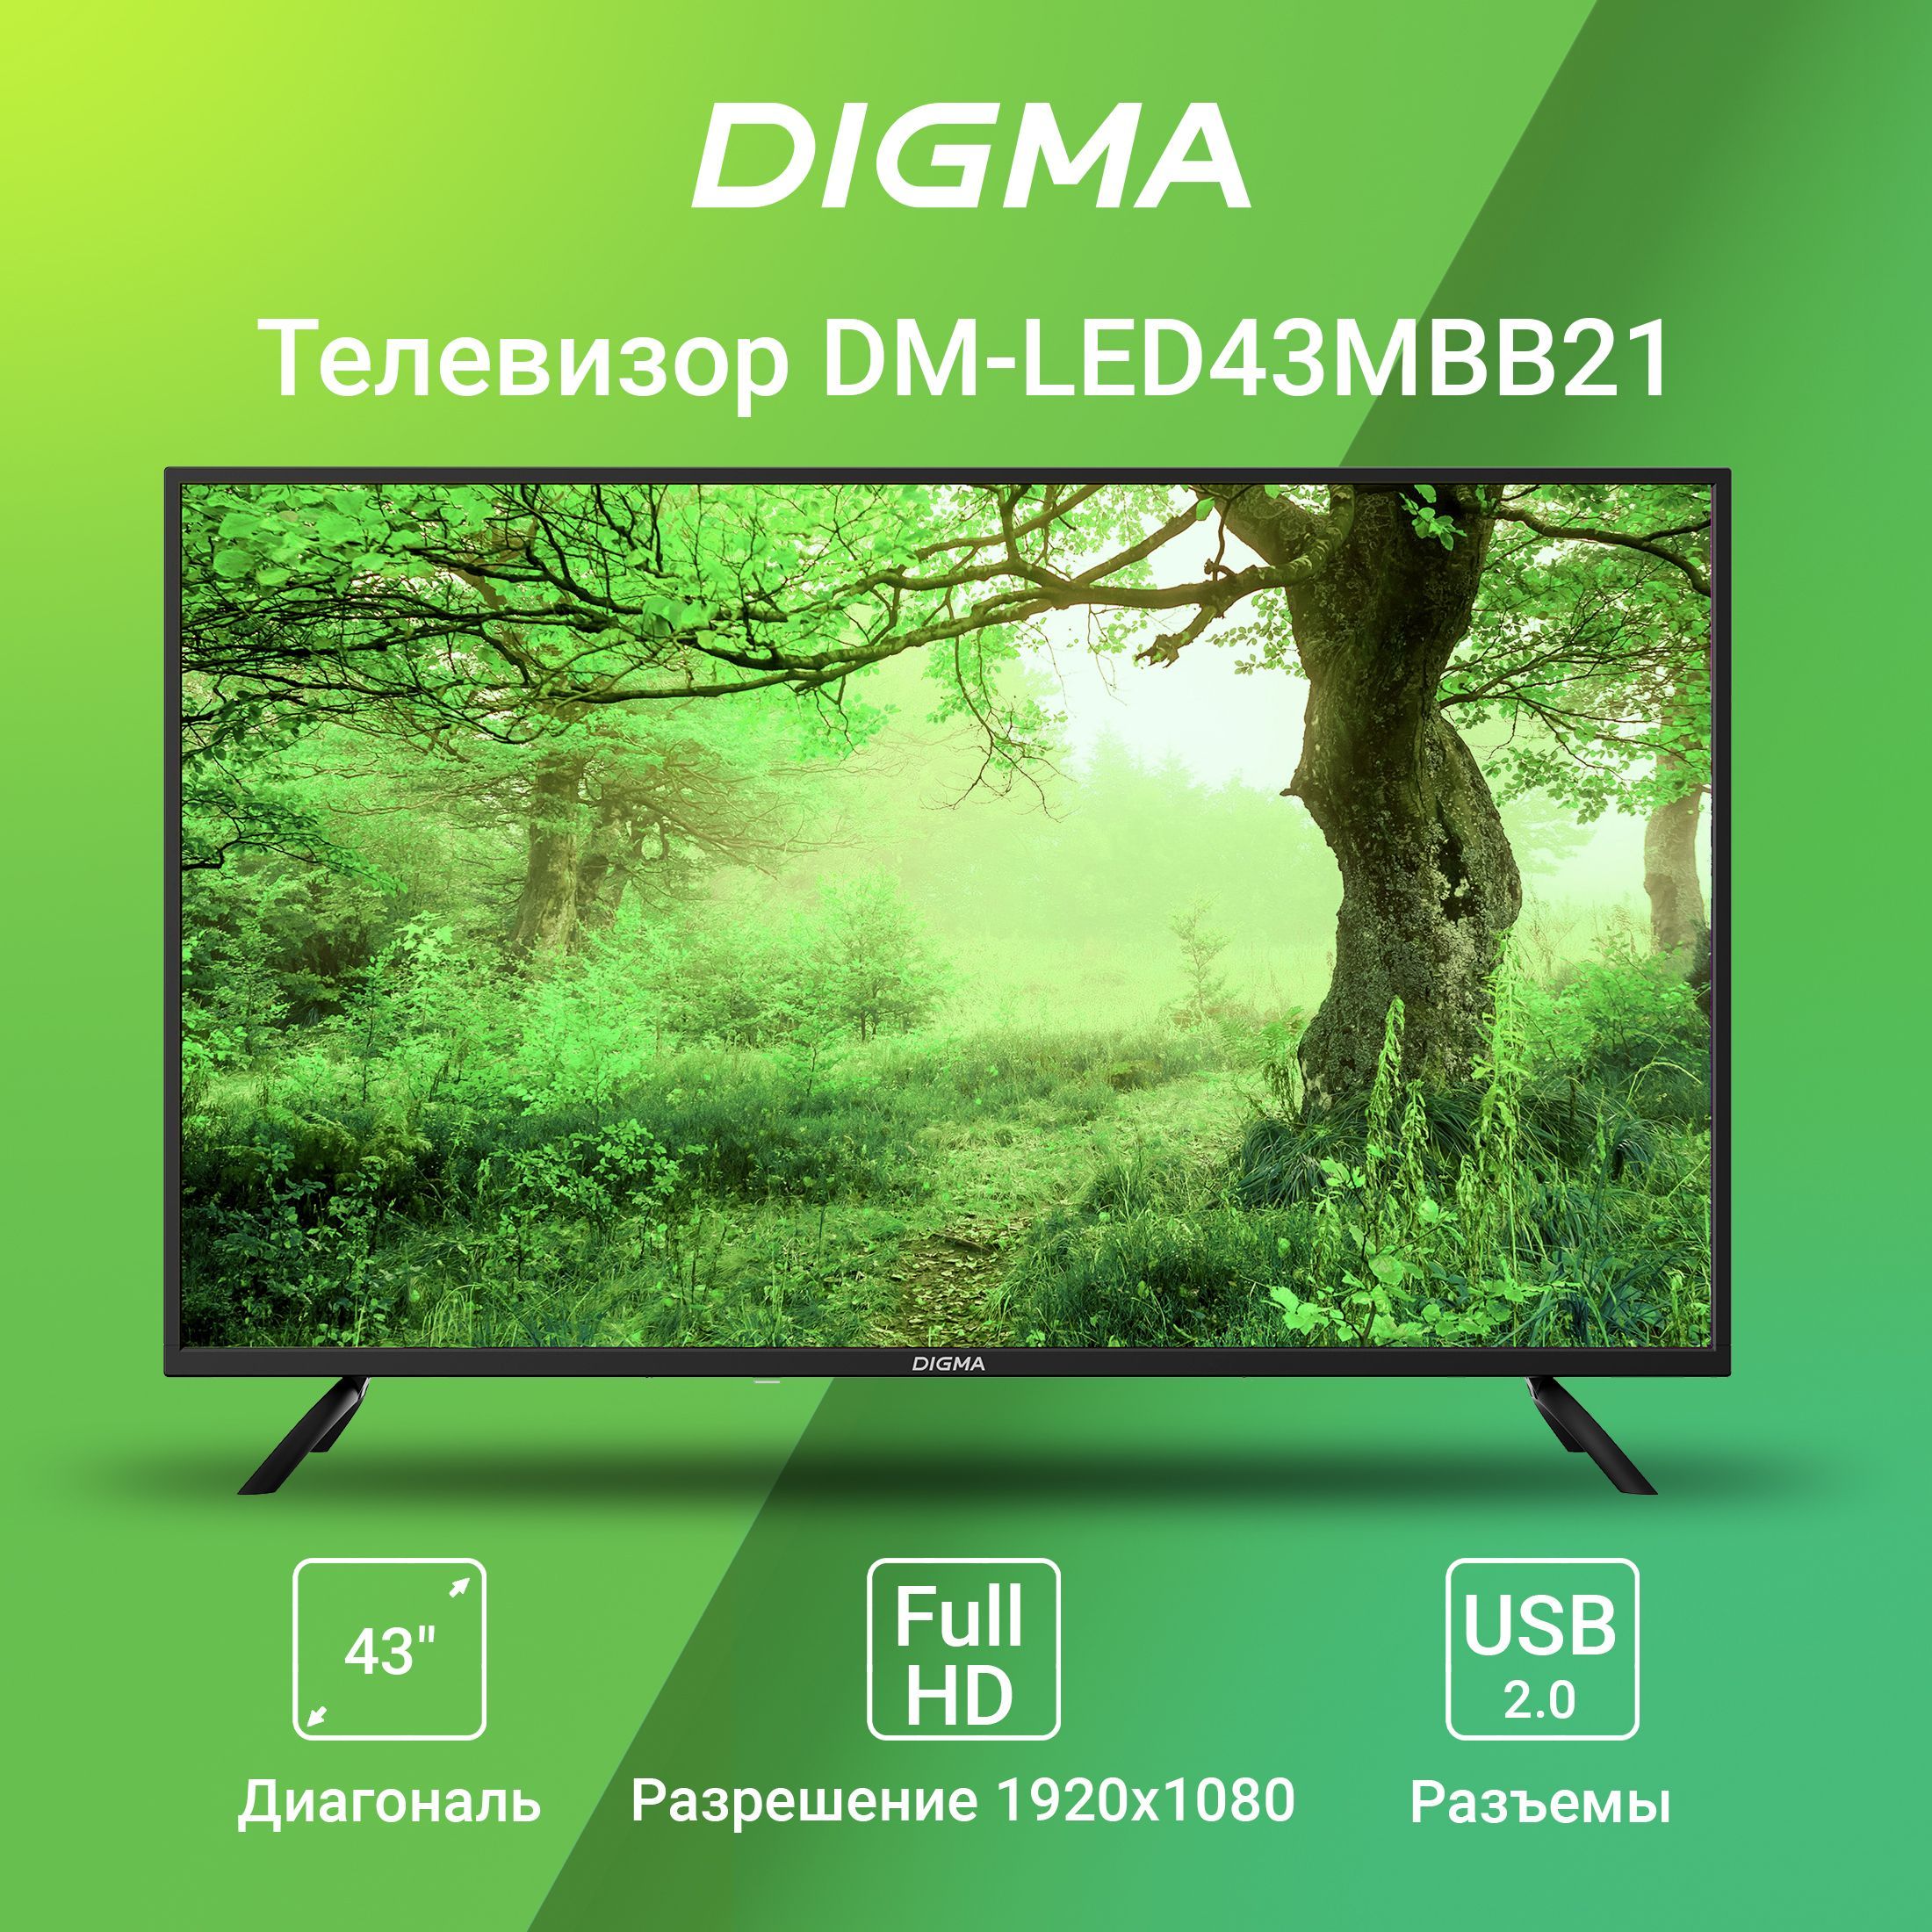 Digma pro телевизор 43. Телевизор Дигма 43. Digma телевизор DM-led43mbb21. Digma DM-led43mbb21 фото телевизора.